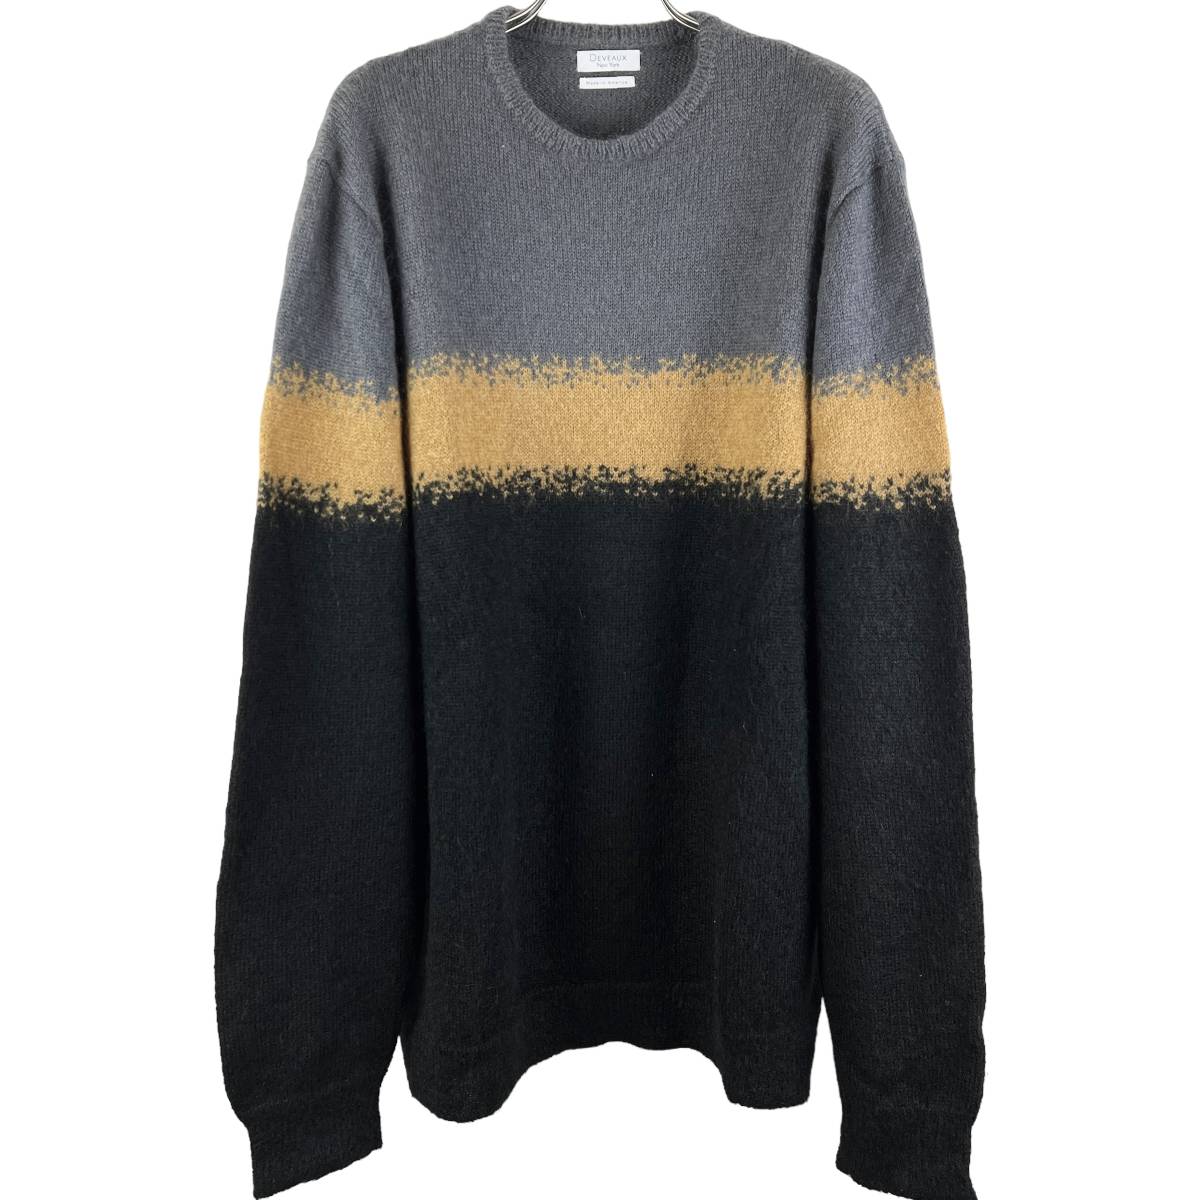 DEVEAUX(デヴォー) Borderline Design Longsleeve Knit Sweater (grey)